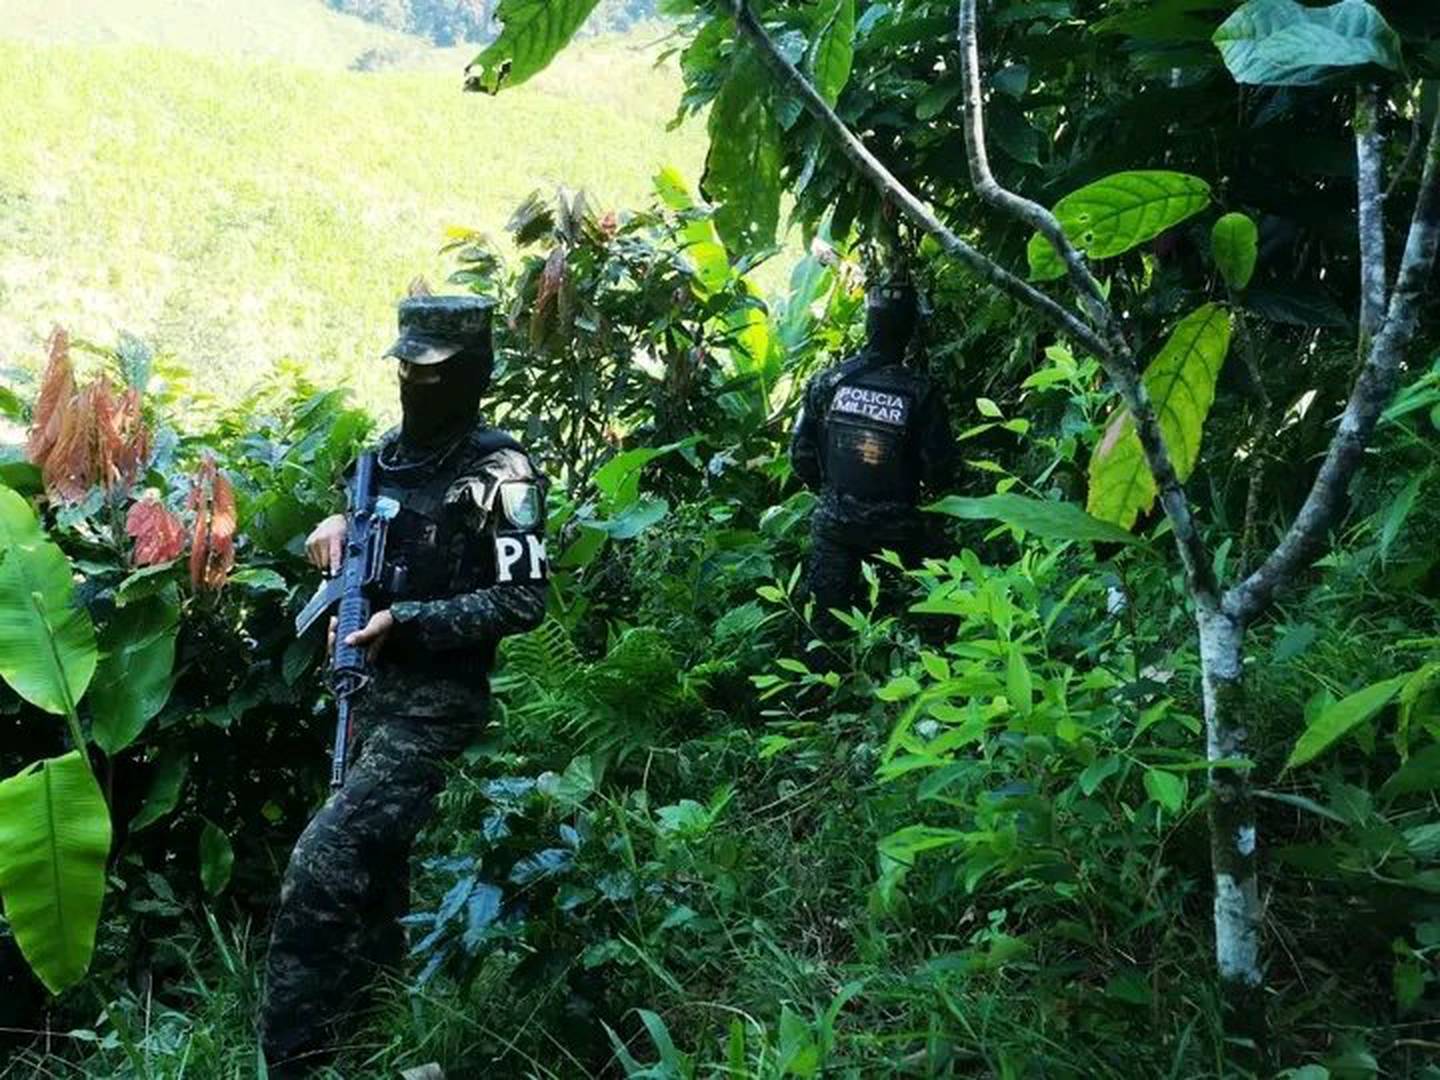 La plantación de plantas de coca está presente en Honduras. La Policía Militar de ese país descubrió una plantación de dos hectáreas en la región de Olancho.